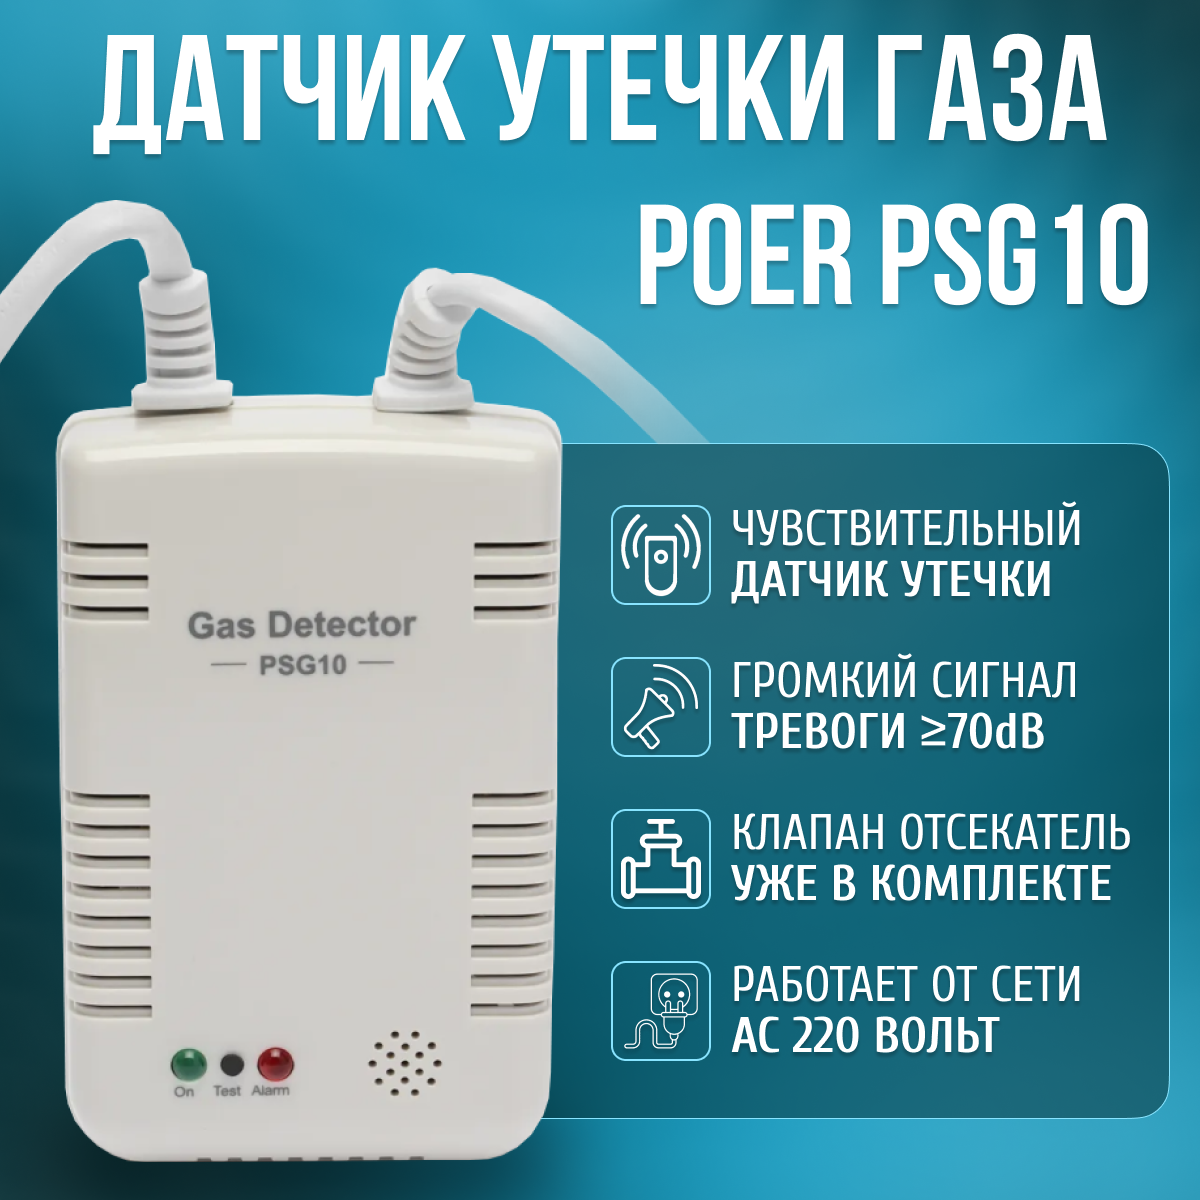 Датчик утечки газа с клапаном 1/2" Газоанализатор Poer PSG10 с возможностью дистанционного управления и сигнализации